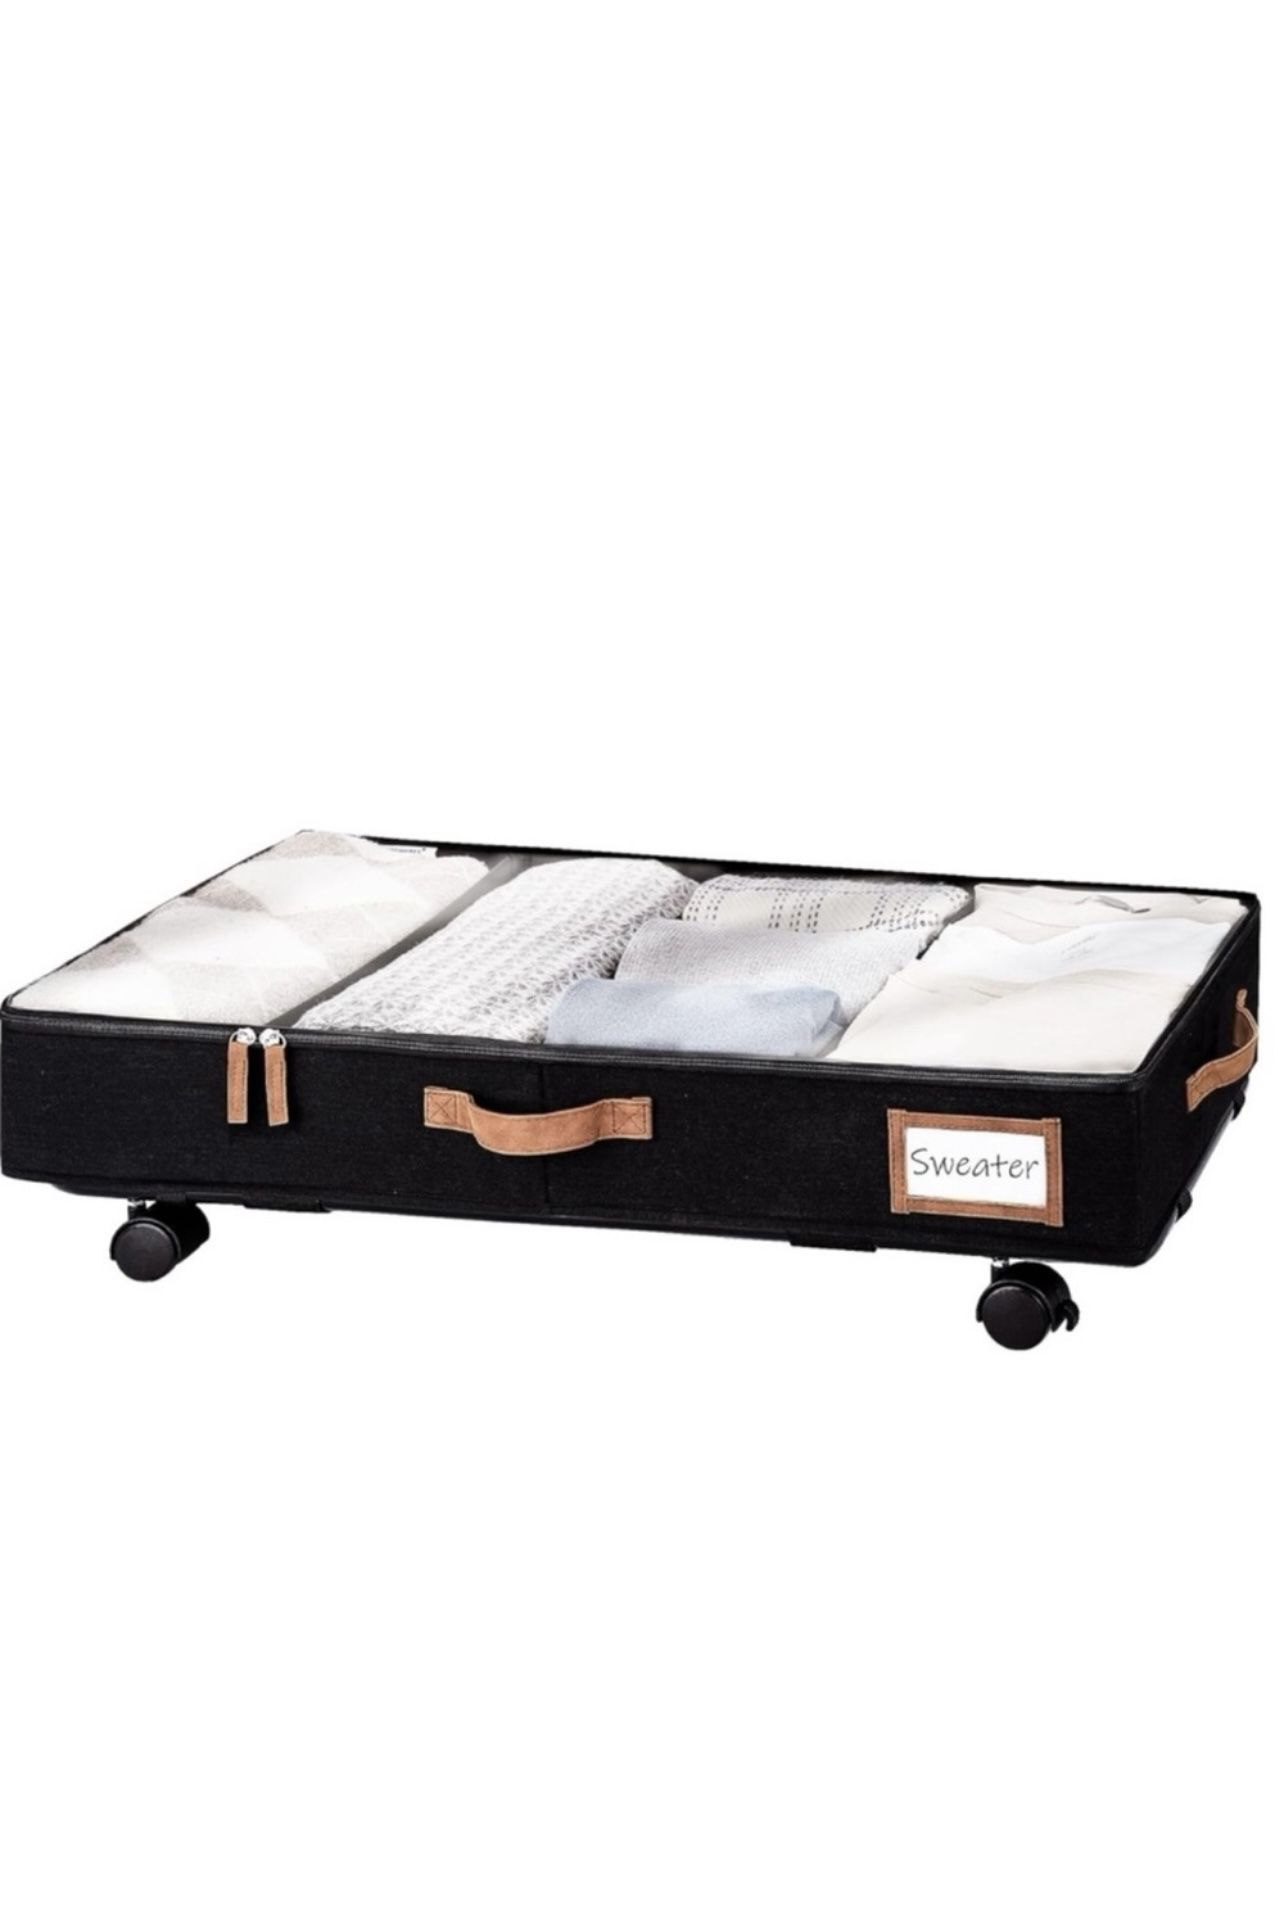 StorageWorks Under Bed Storage with Wheels & Handles Clothes & Blanket Organizer